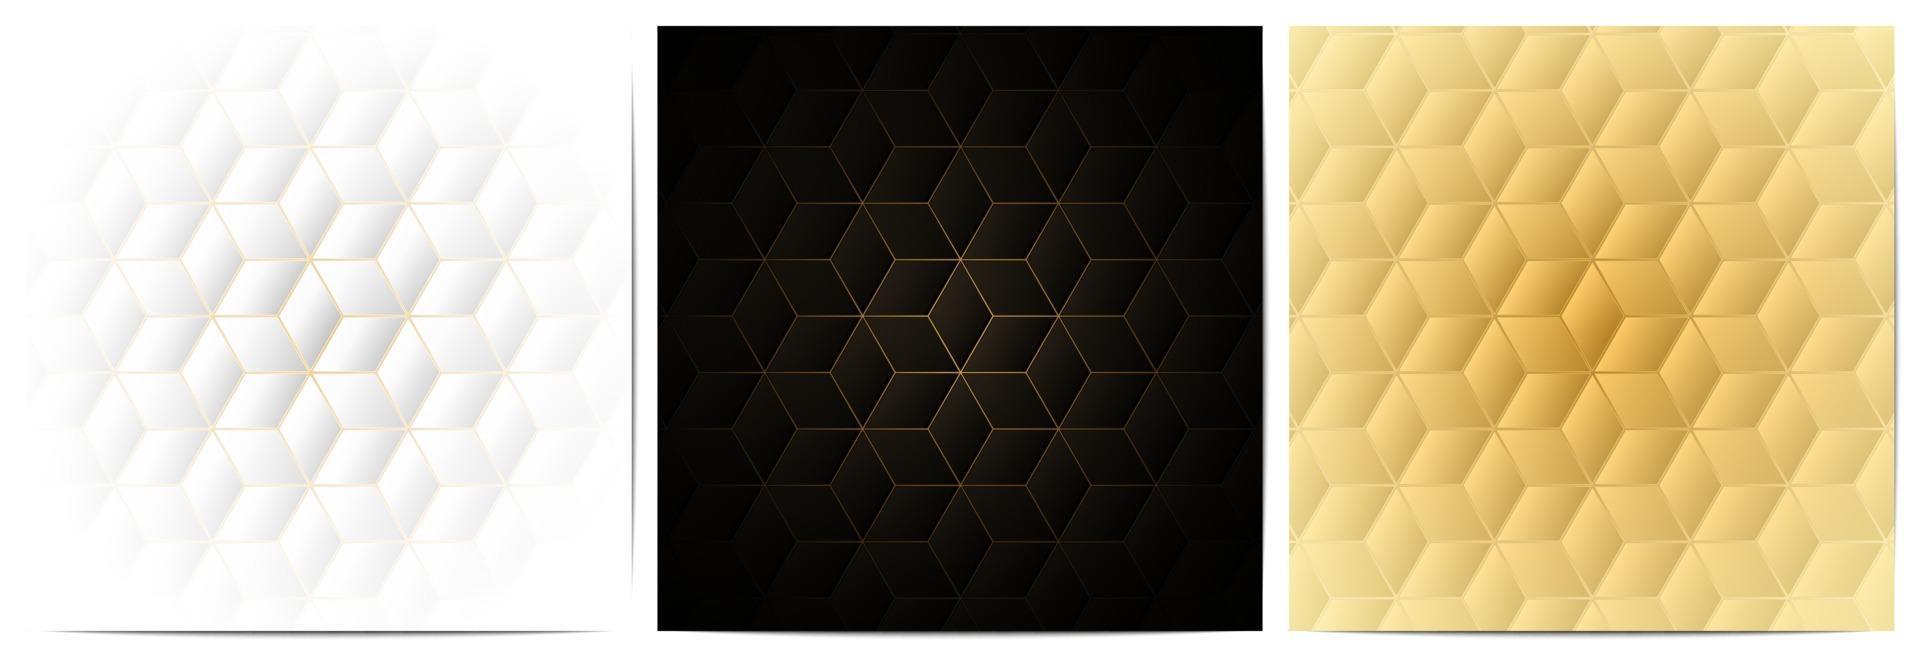 padrão geométrico com forma poligonal e linhas douradas vetor